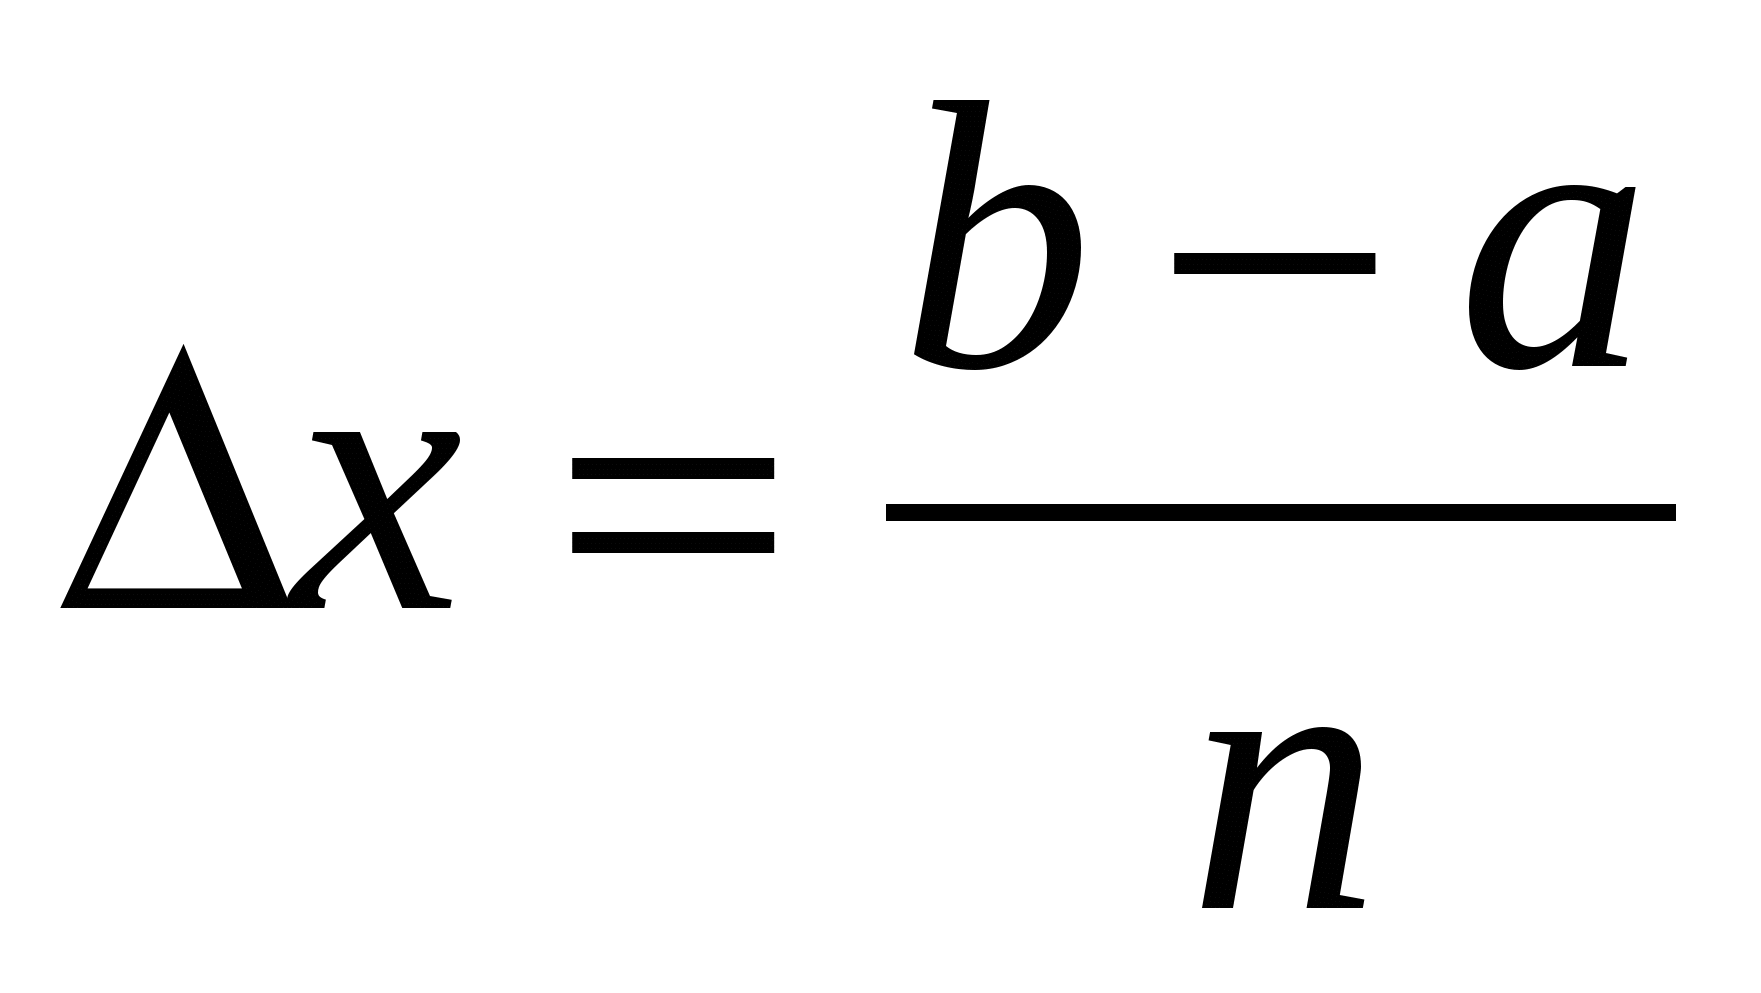 Практическая работа на тему Приближенное интегрирование функций (формула трапеций)